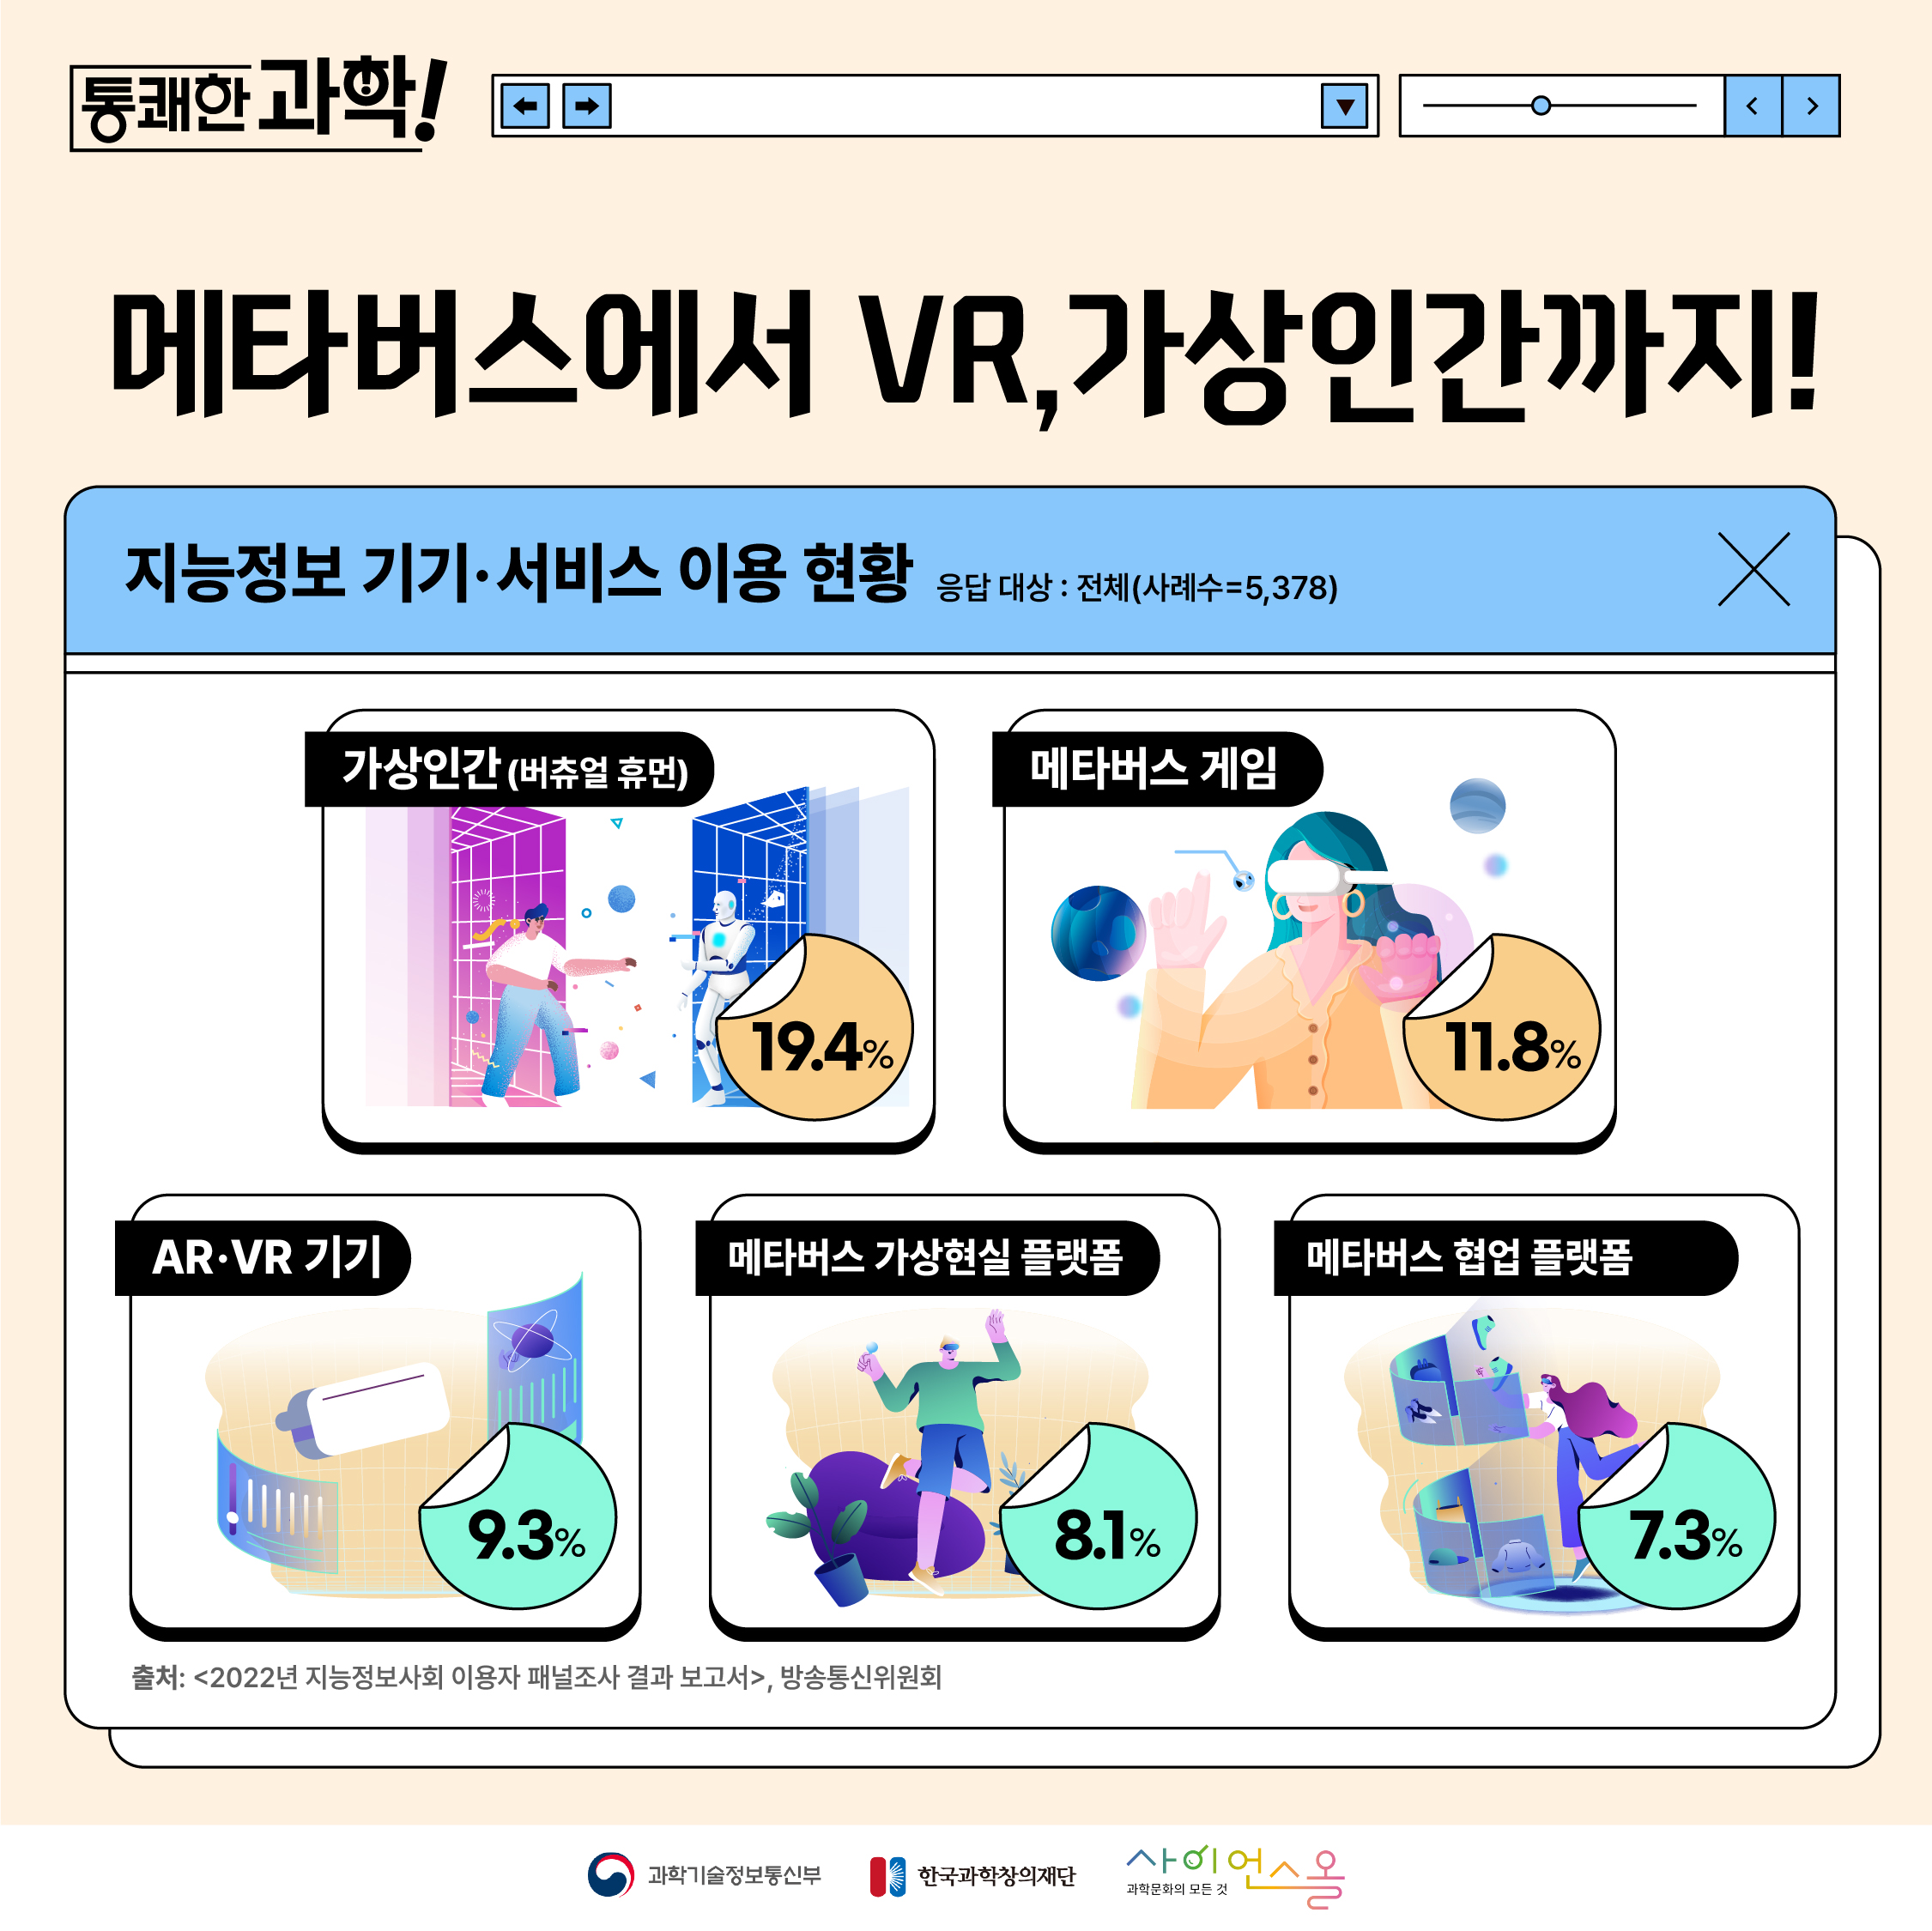 [통쾌한 과학] 메타버스에서 VR, 가상인간까지!